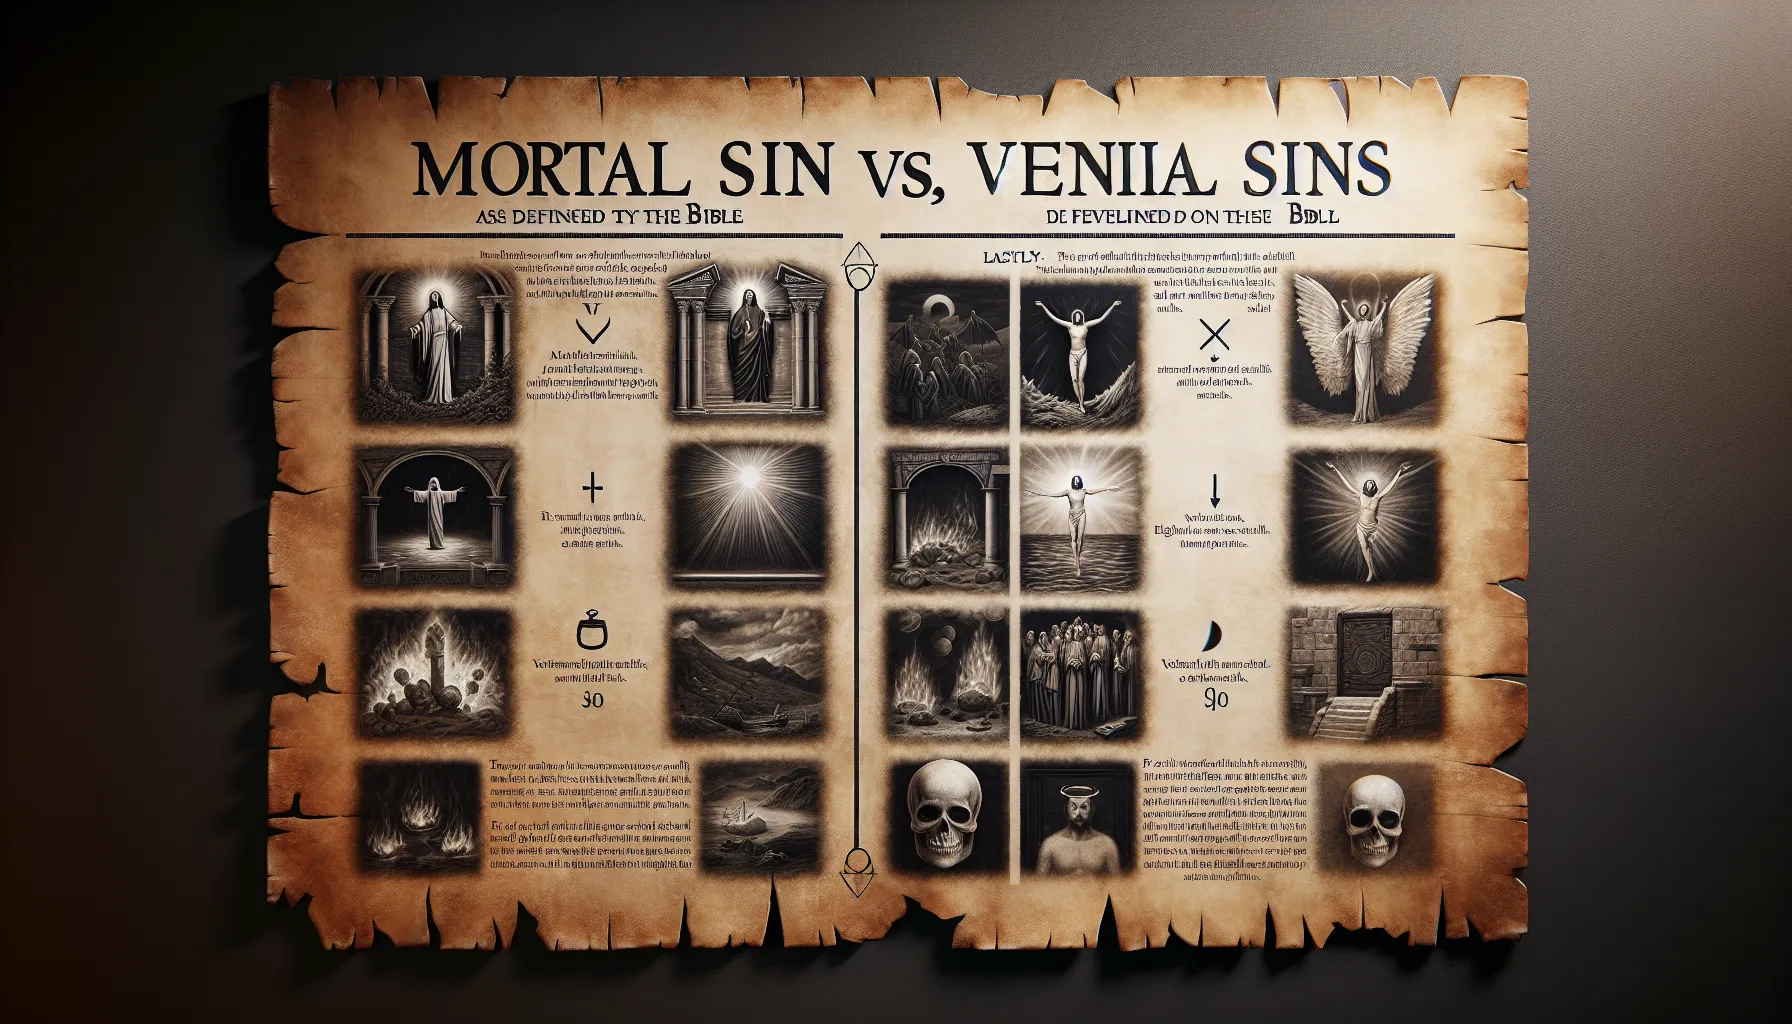 Comparación entre pecados mortales y veniales según la Biblia